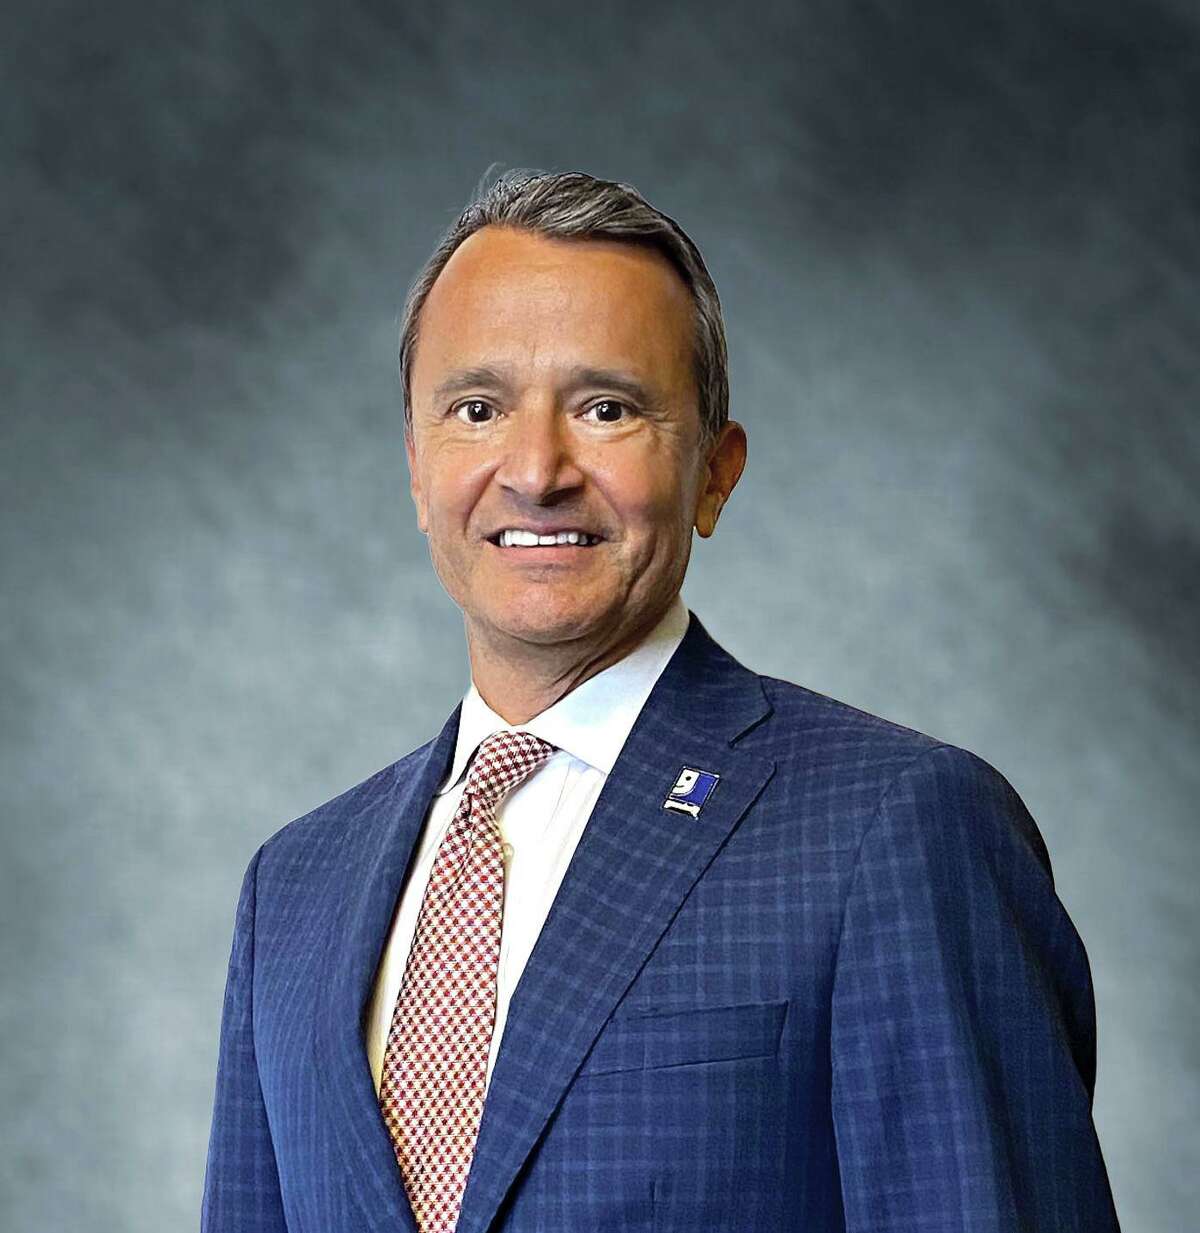 Carlos J. Contreras, III is President & CEO at Goodwill San Antonio.